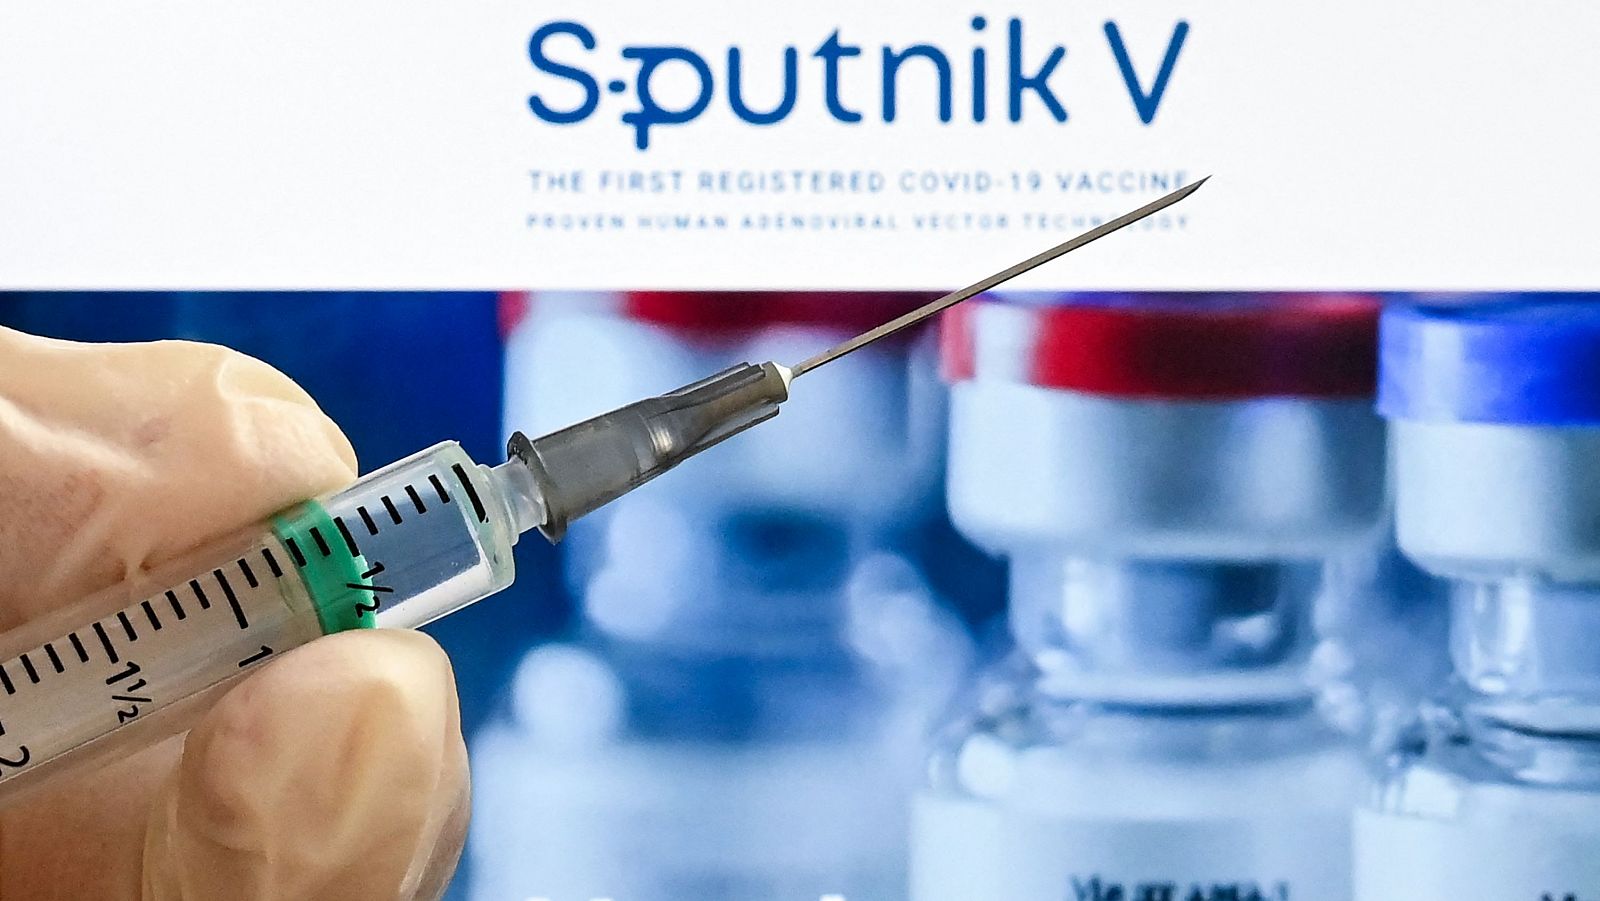 Díaz Ayuso defiende sus gestiones sobre la vacuna rusa Sputnik V